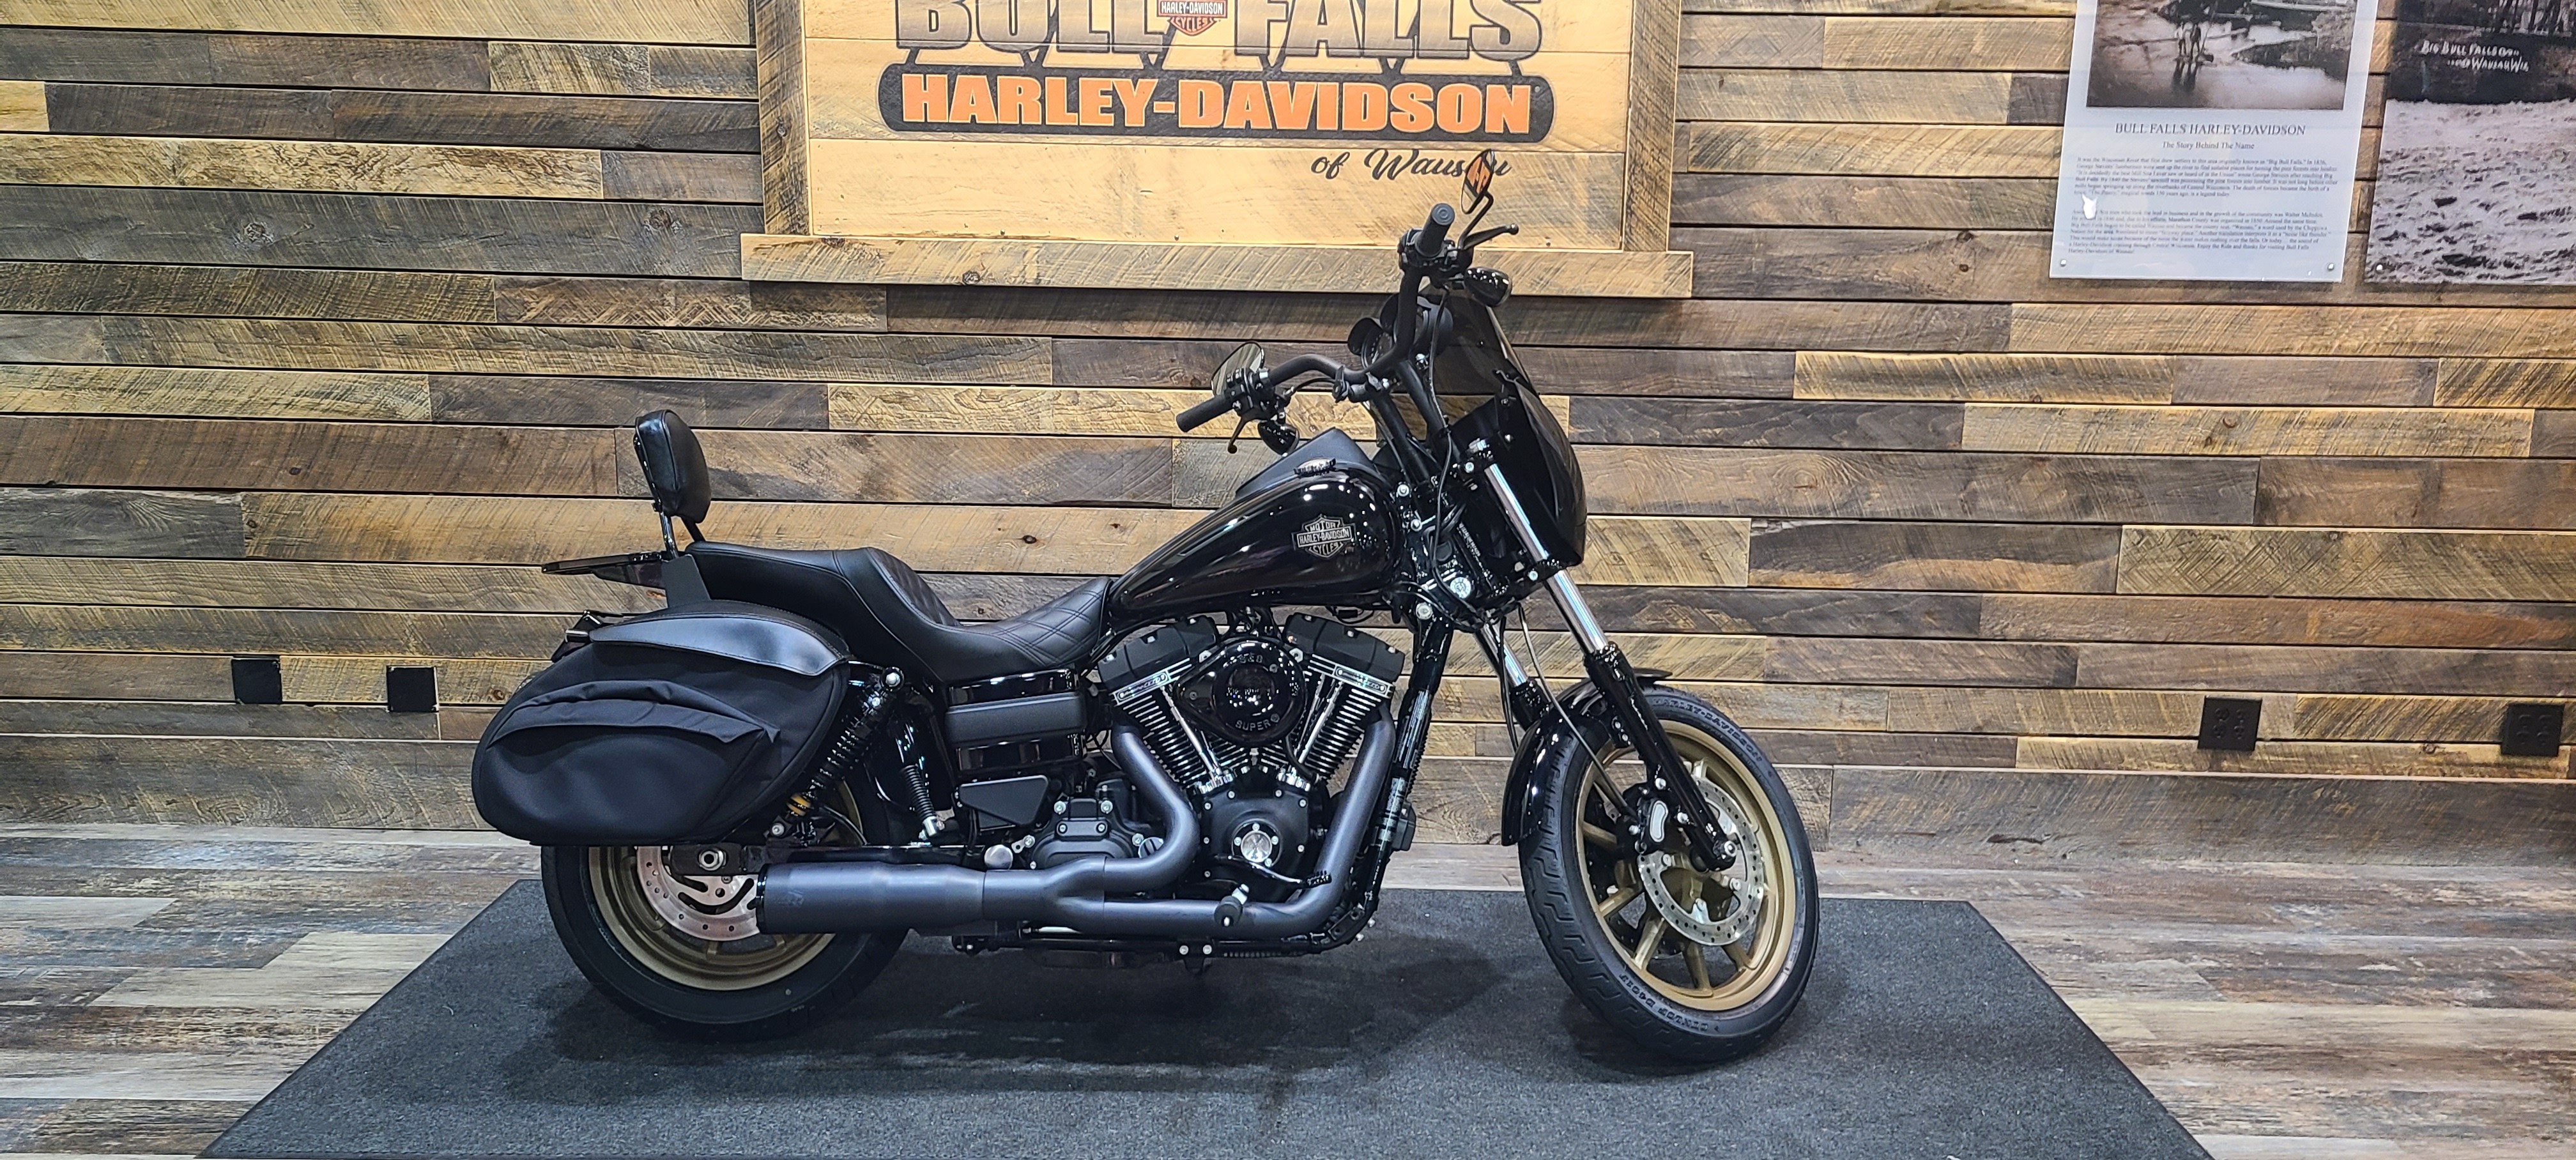 2017 Harley-Davidson Dyna Low Rider S at Bull Falls Harley-Davidson